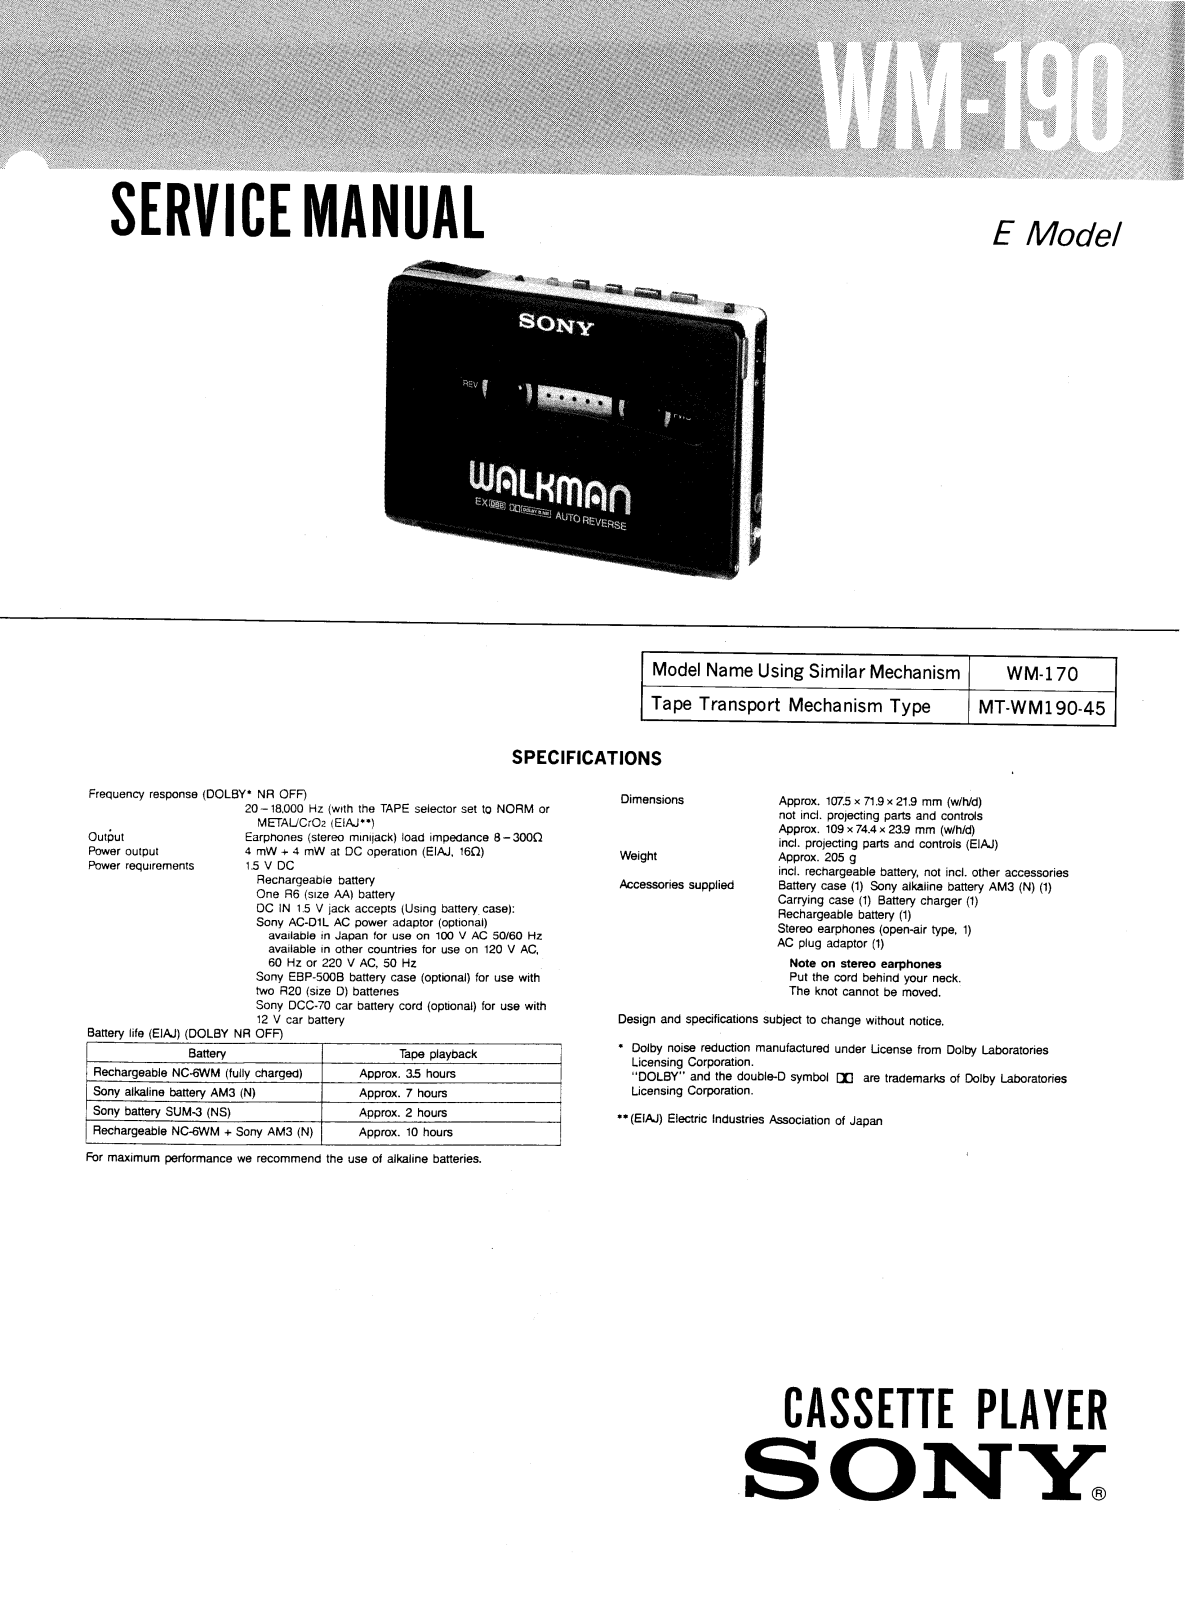 Sony WM-190 Service manual